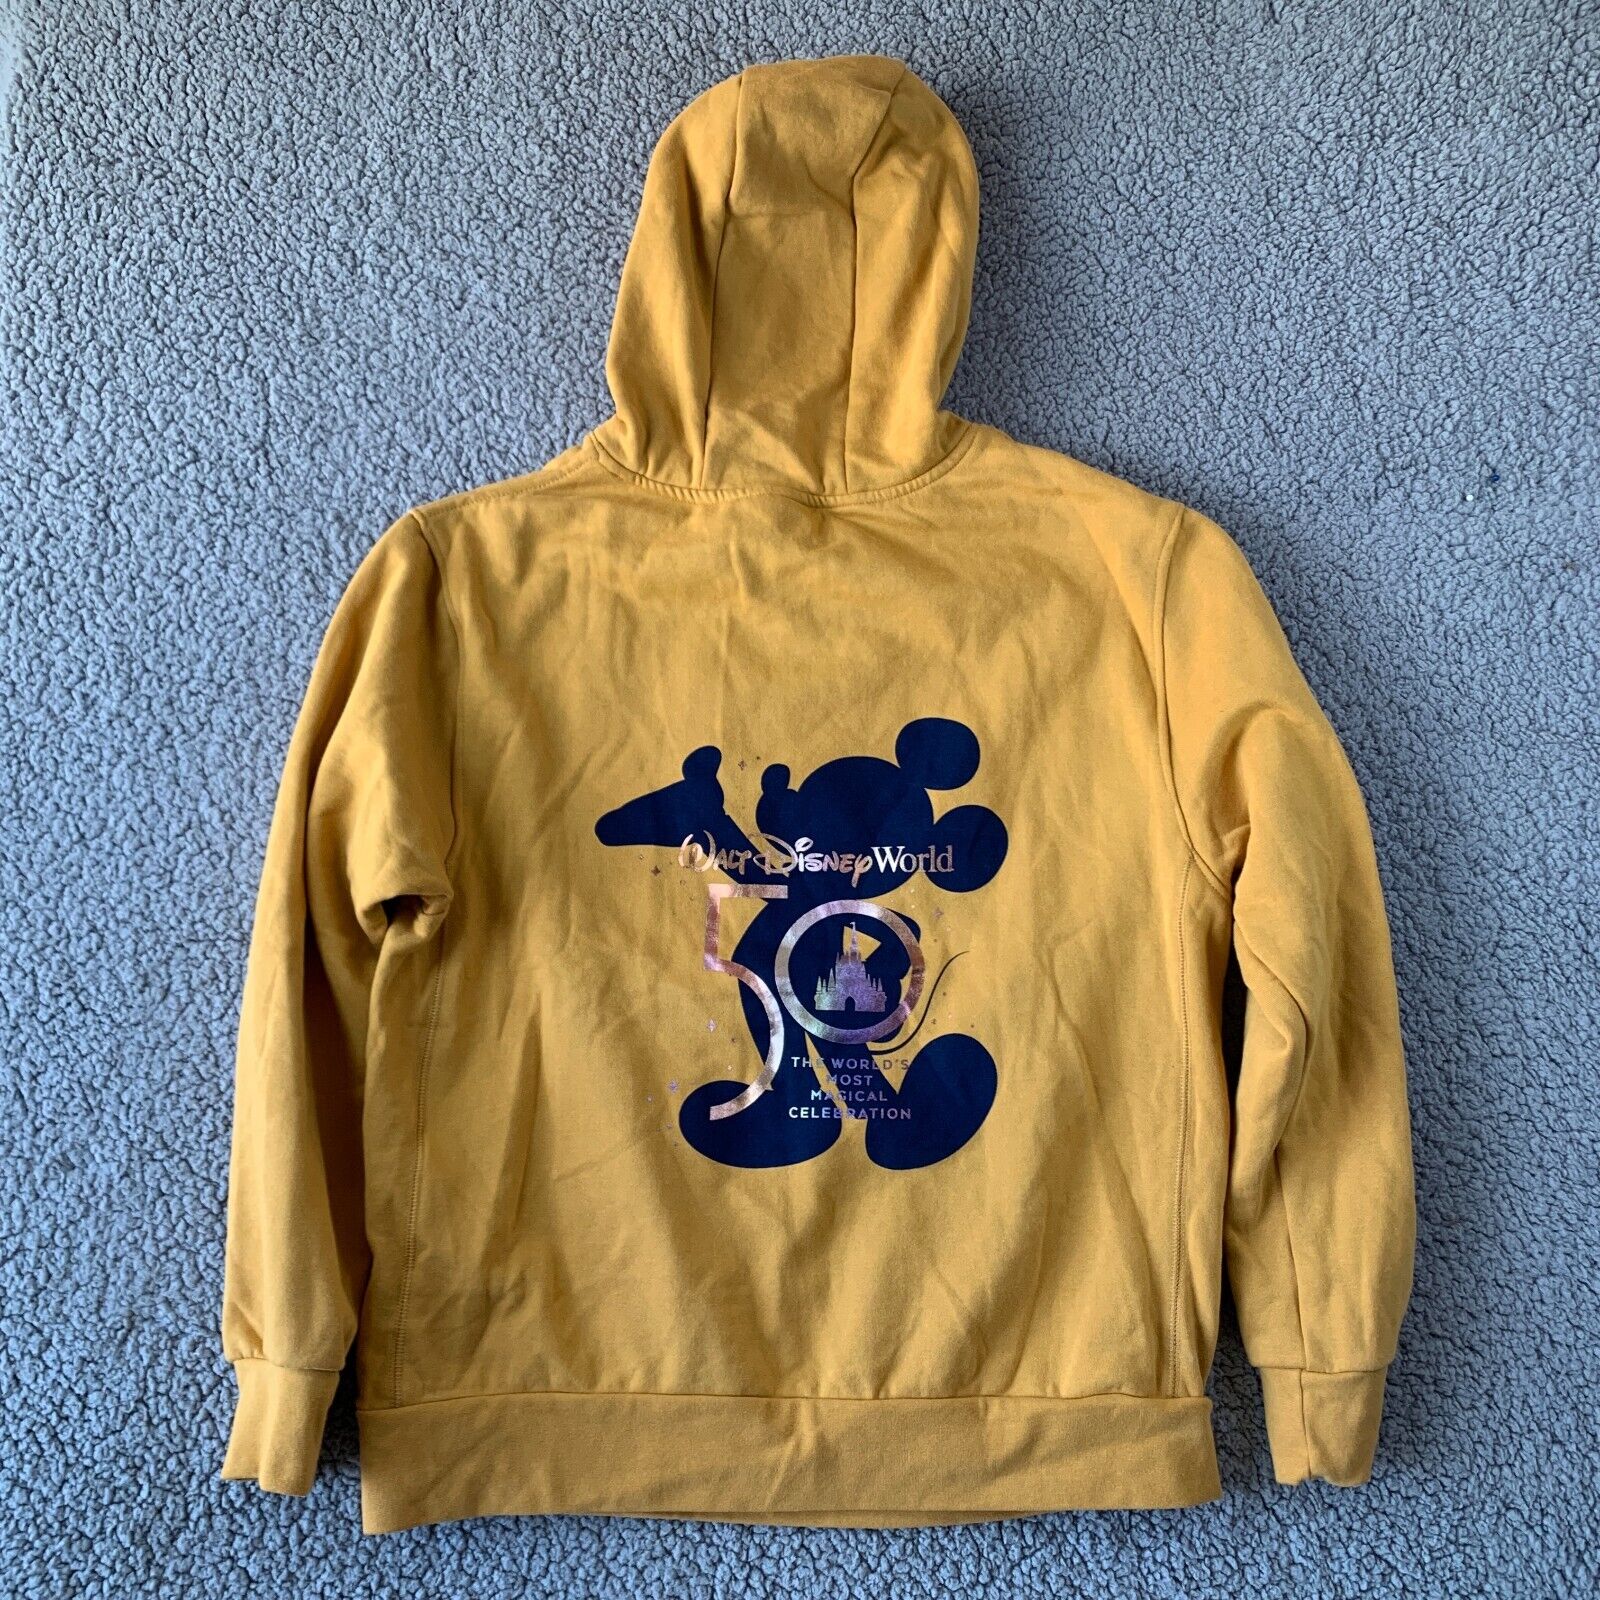 Disney 50th Anniversary Hoodie Sweatshirt Adult Medium M Mustard Yellow